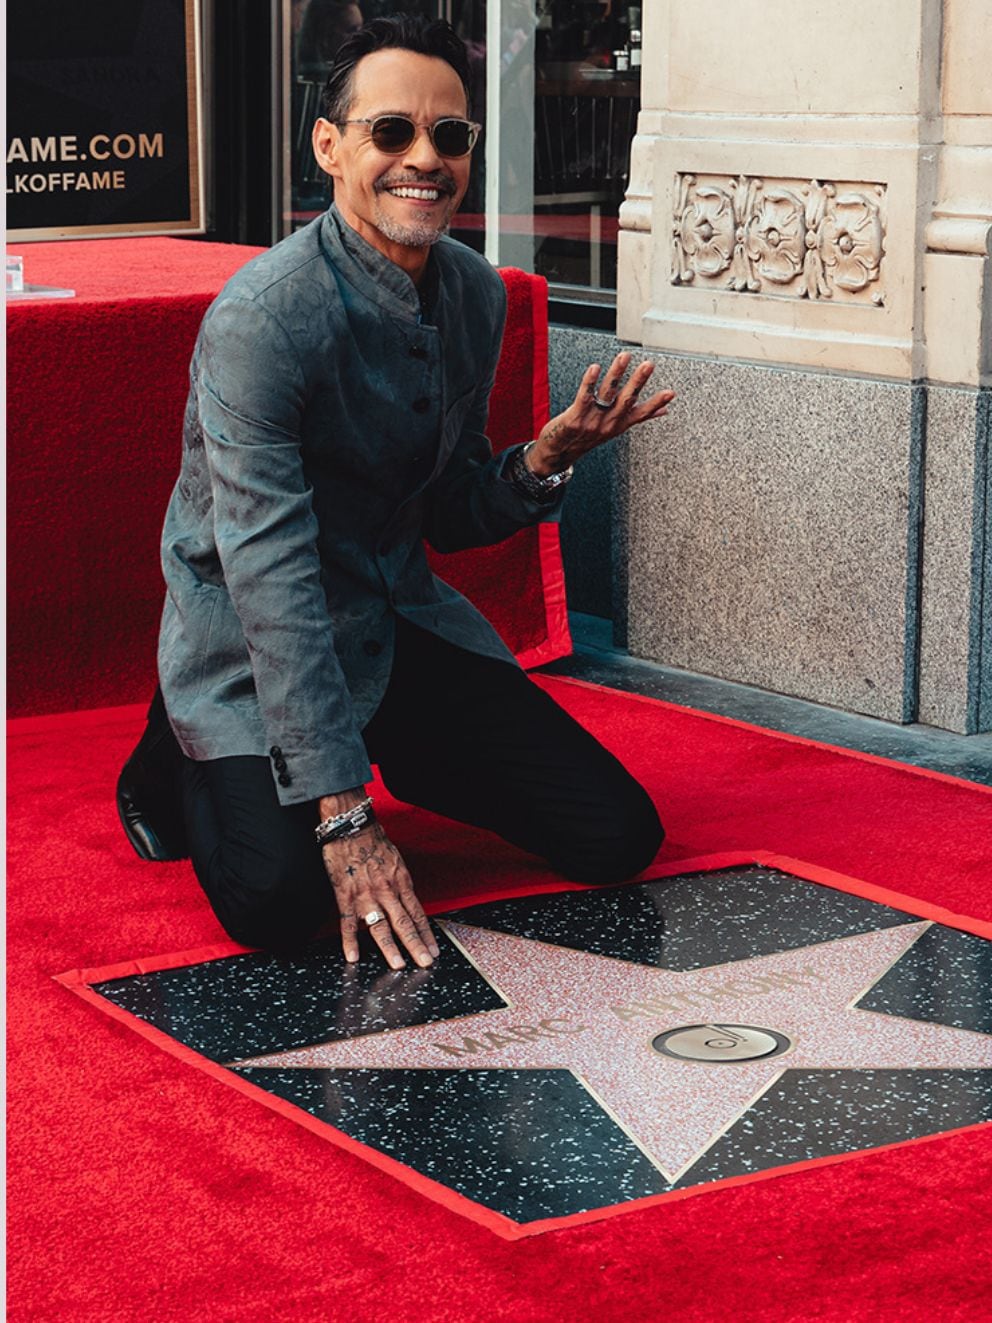 Marc Anthony recibiendo su estrella en el Paseo de la Fama de Hollywood (Facdbook)